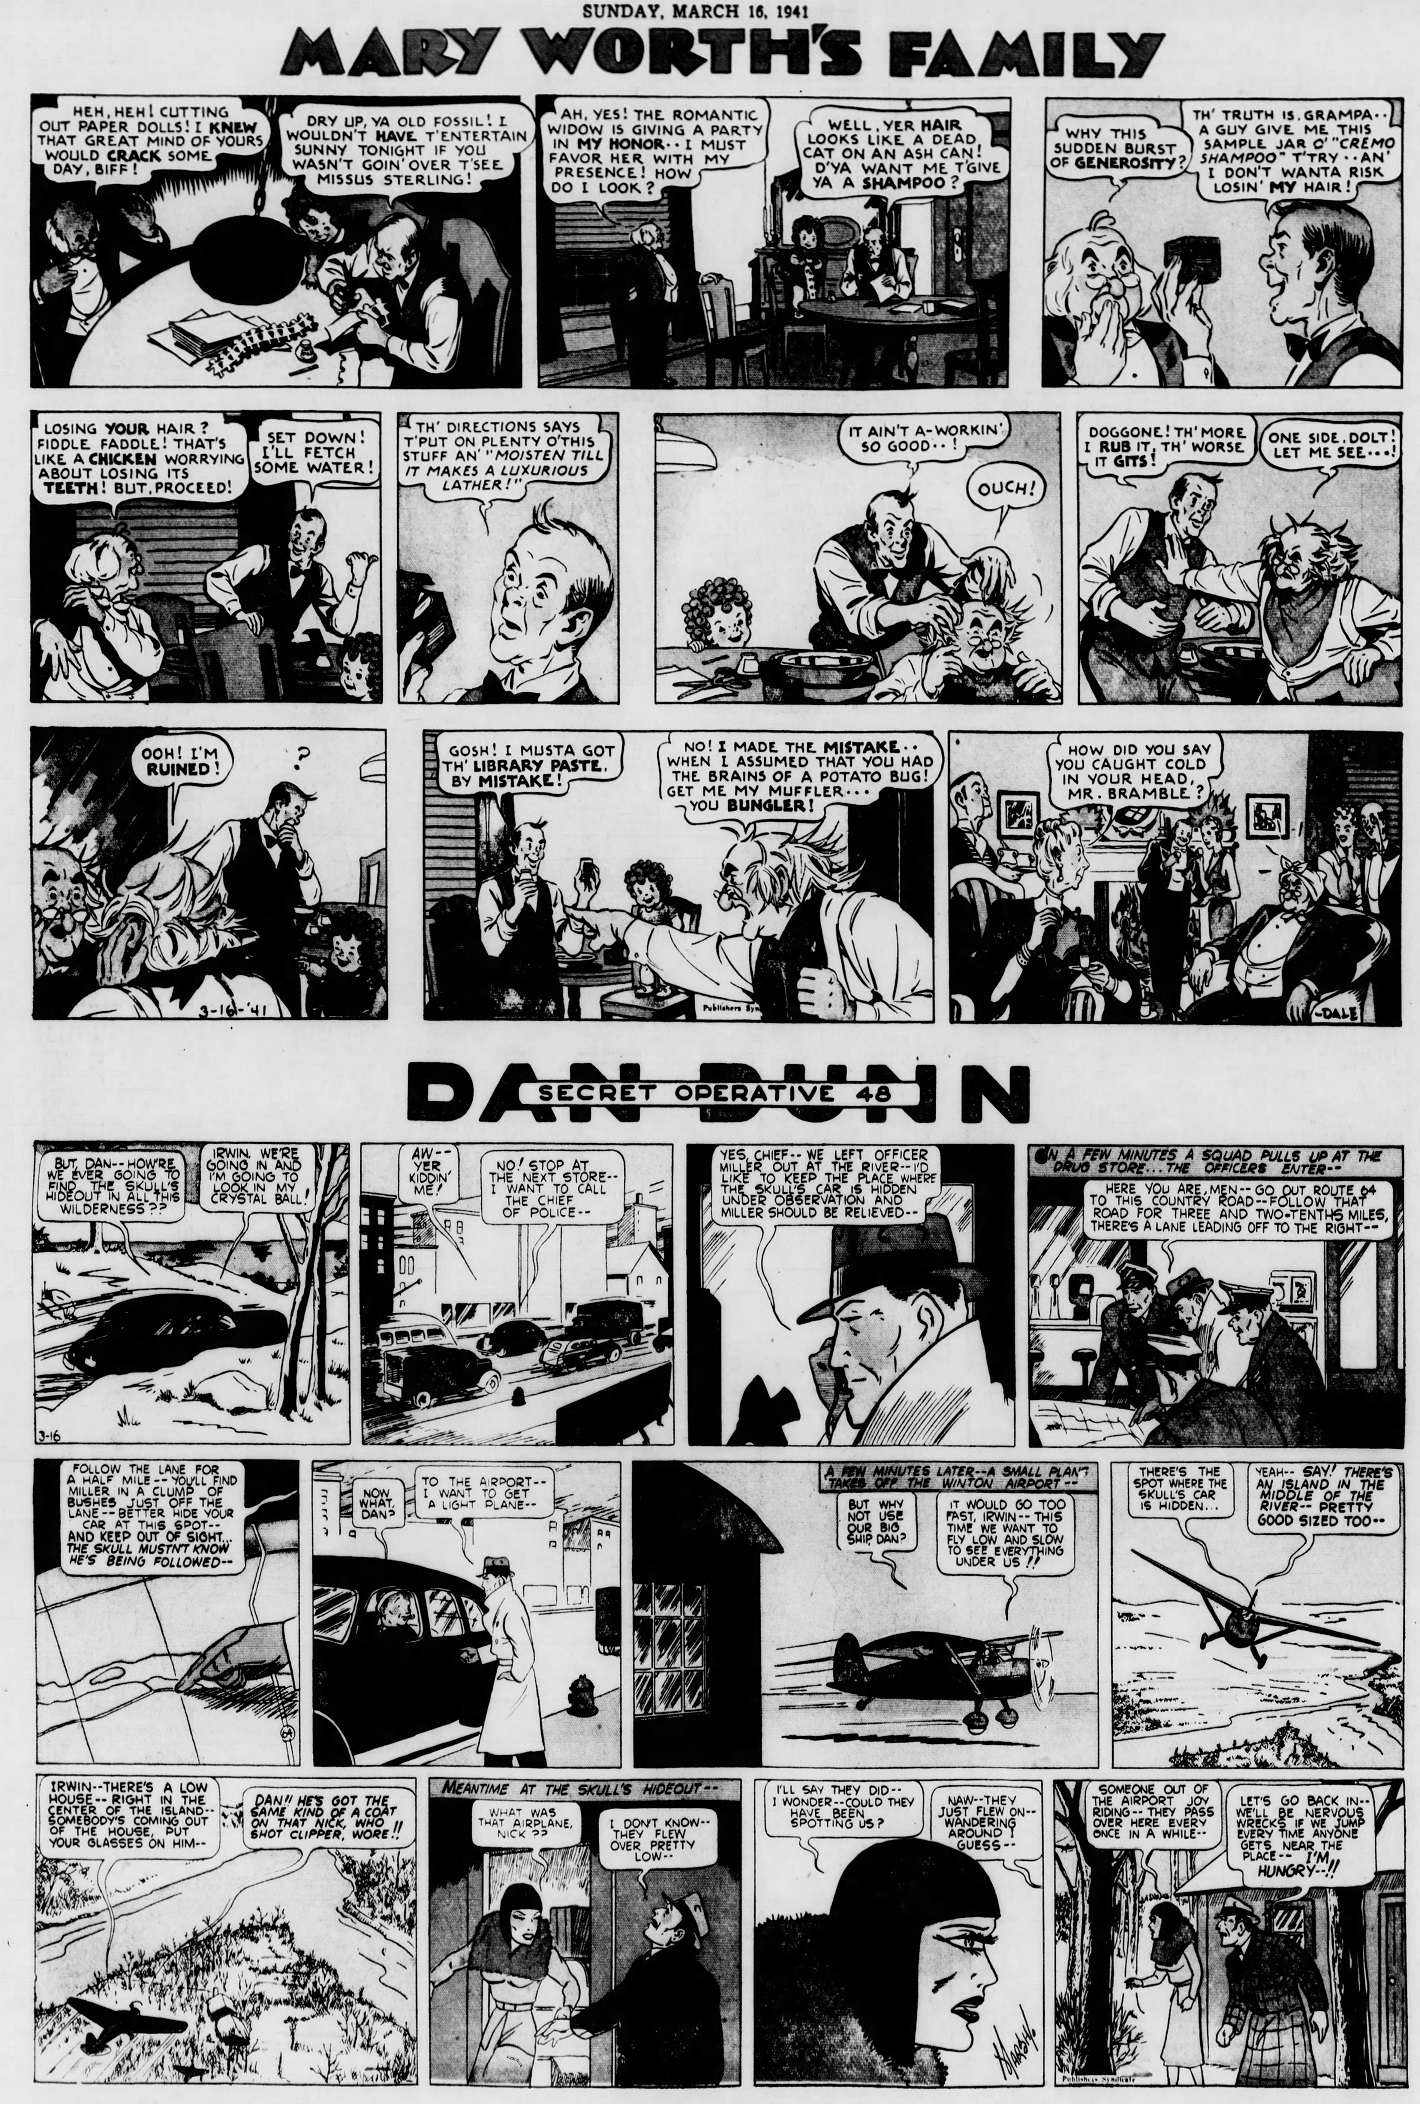 The_Brooklyn_Daily_Eagle_Sun__Mar_16__1941_(9).jpg